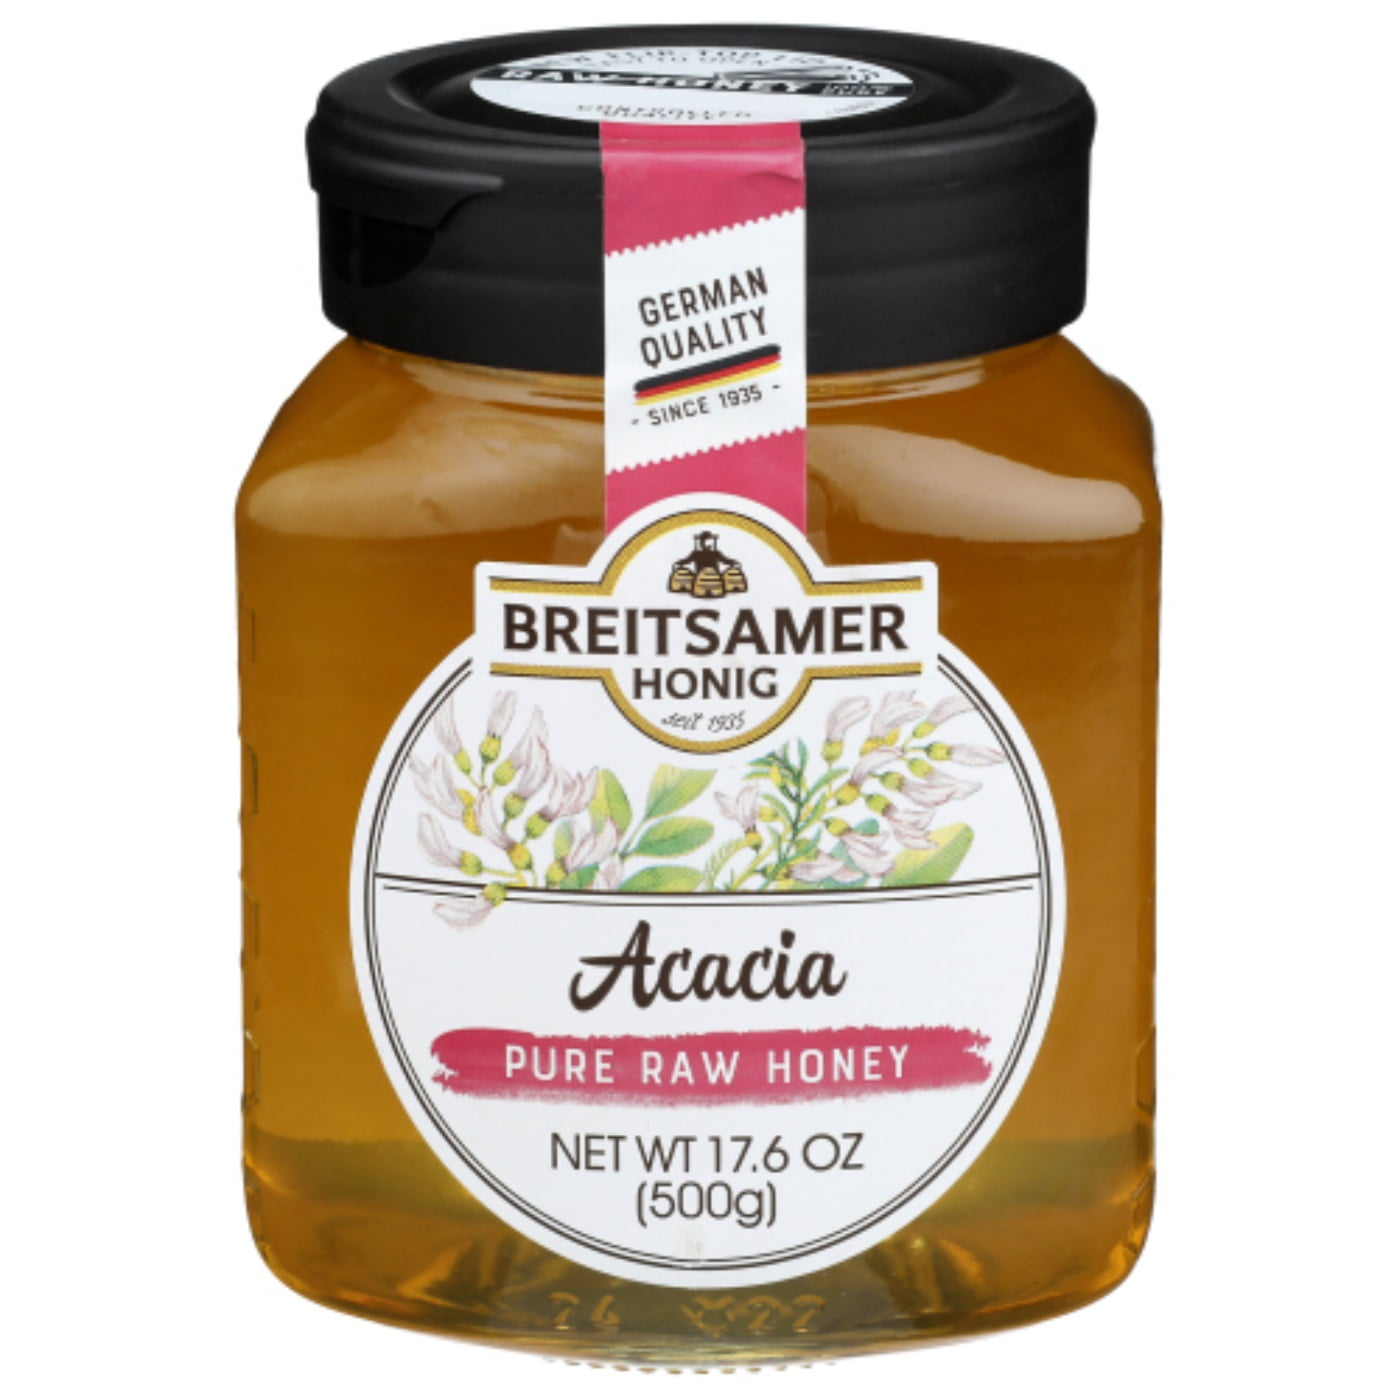 Breitsamer Honey Acacia 17.6 oz Jar